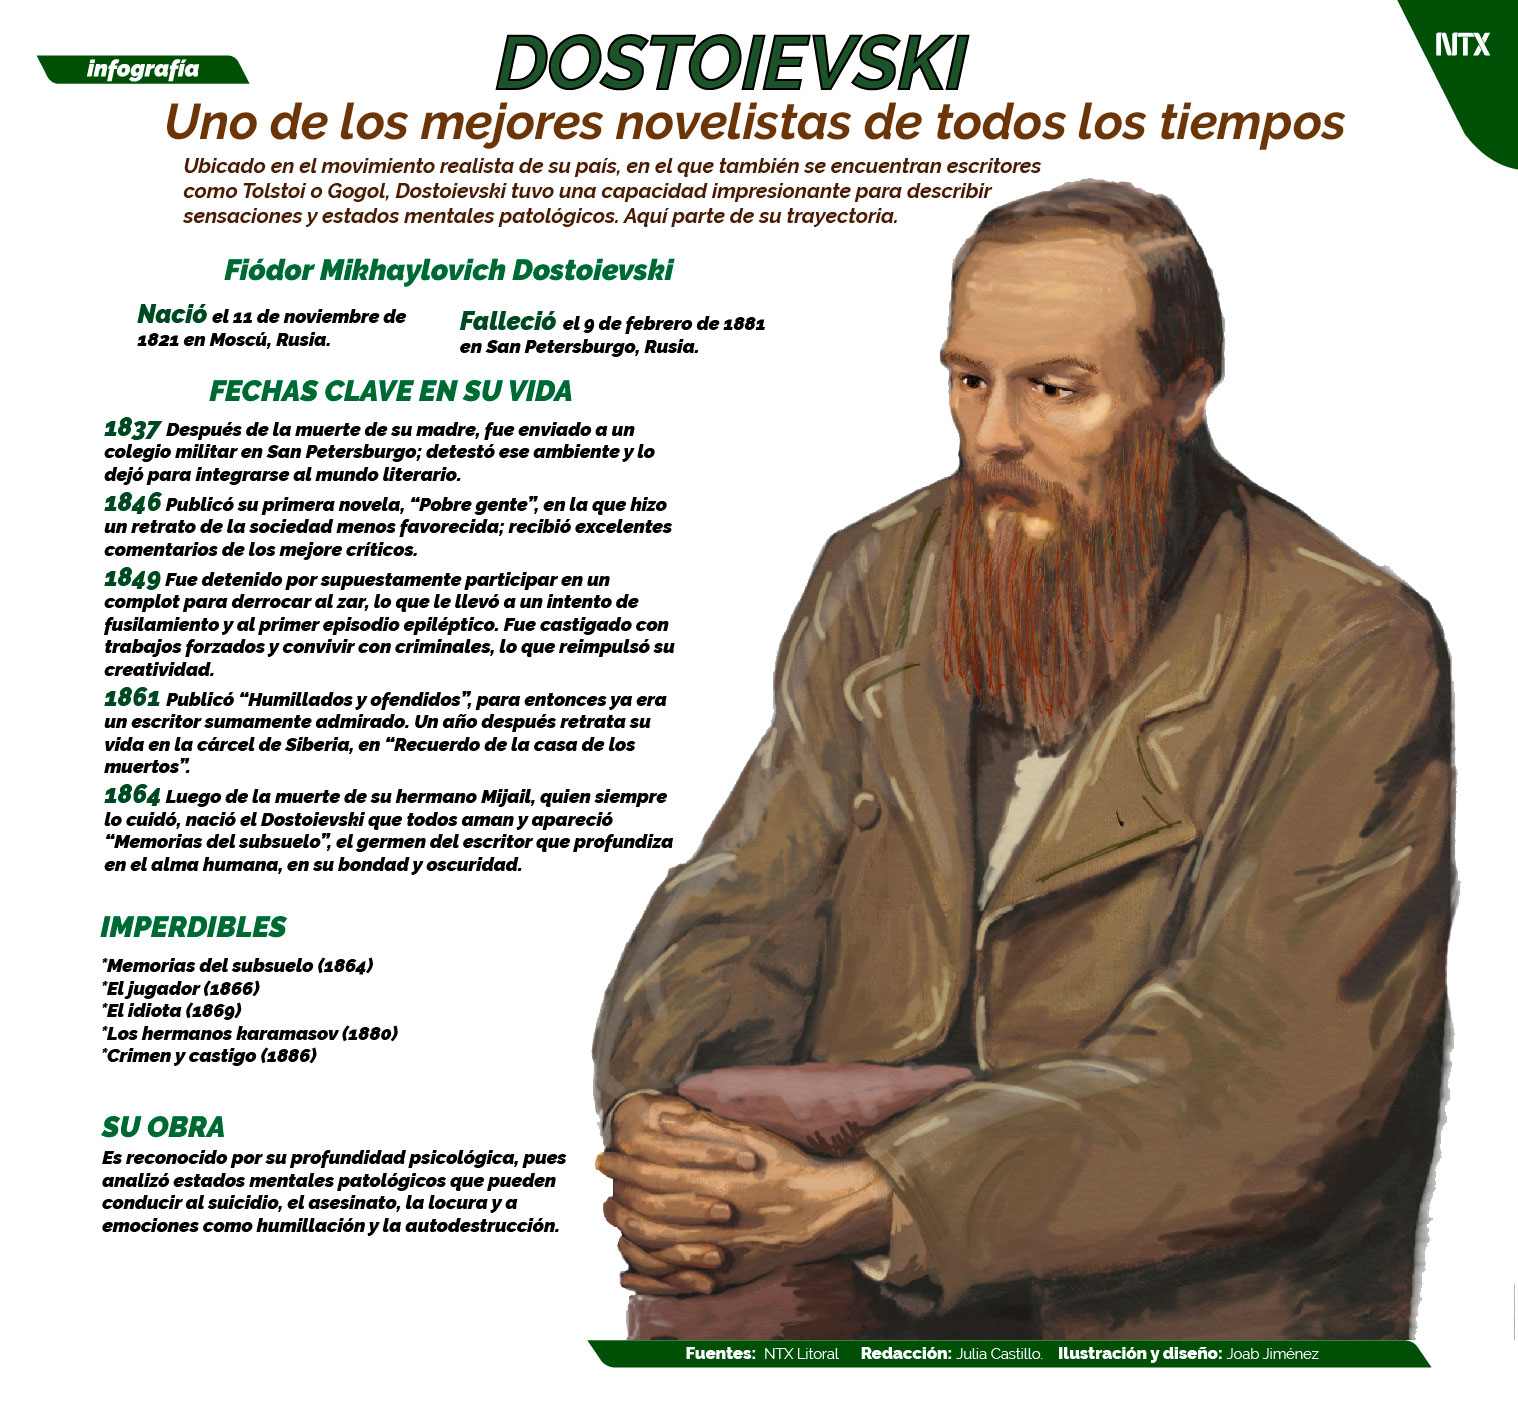 Dostoyevski, uno de los mejores novelistas